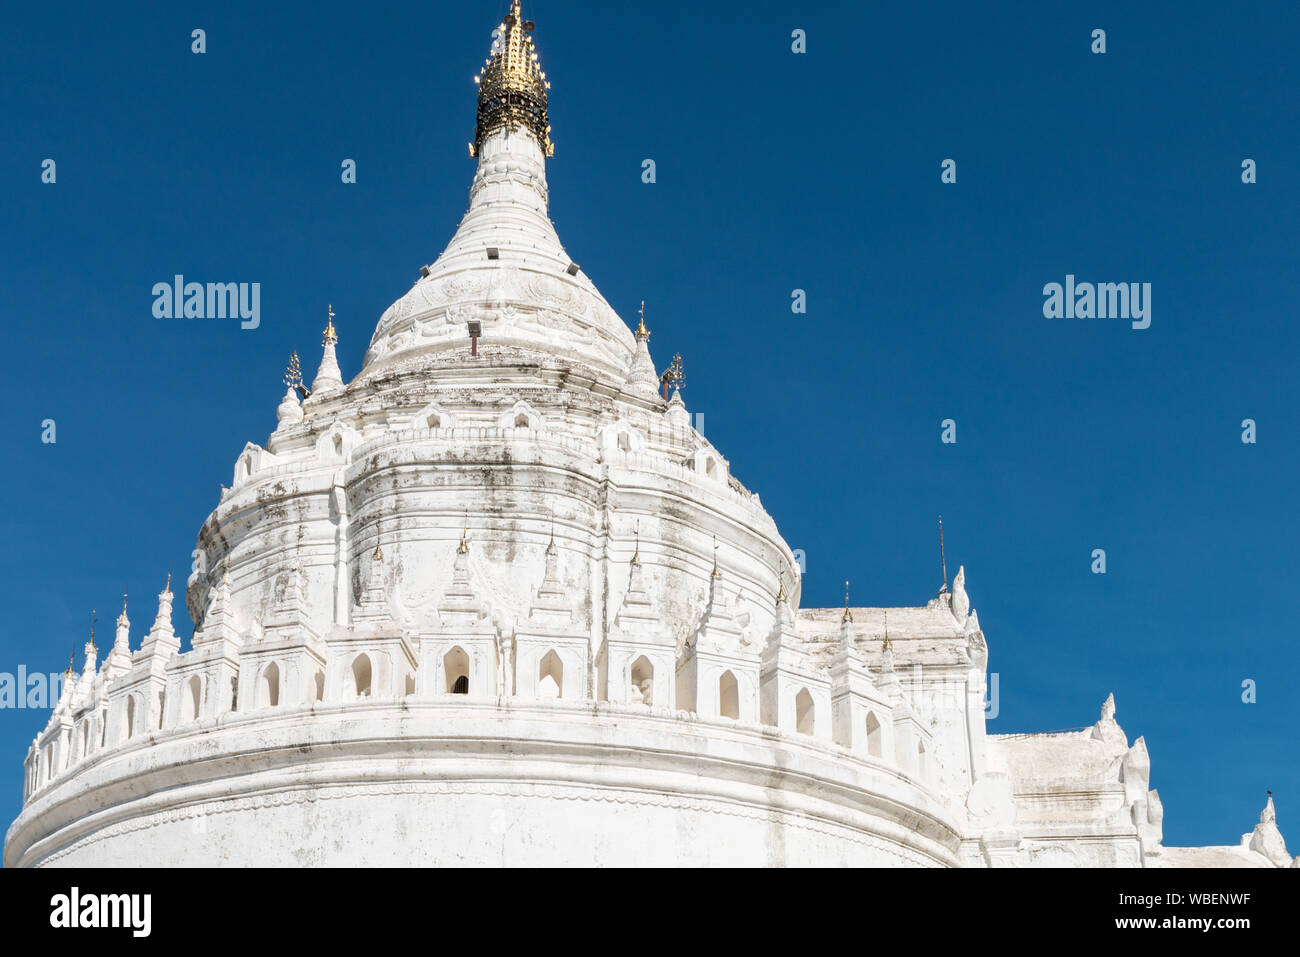 Photo horizontale du haut de la Pagode Hsinbyume bouddhiste, l'un des monument du Myanmar, situé à proximité de Mandalay Banque D'Images